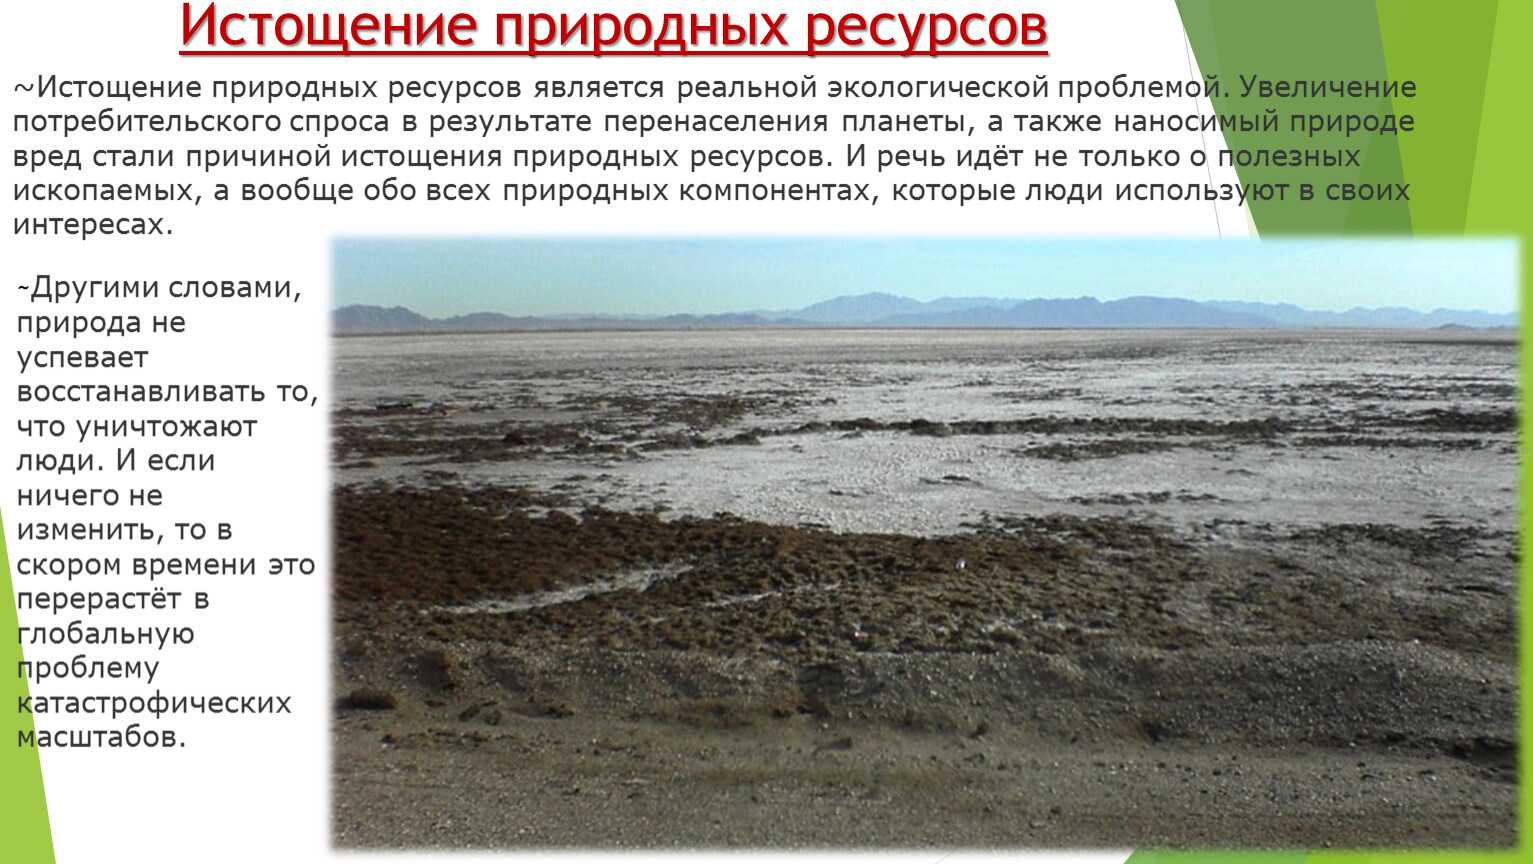 Проблемы использования природных ресурсов россии